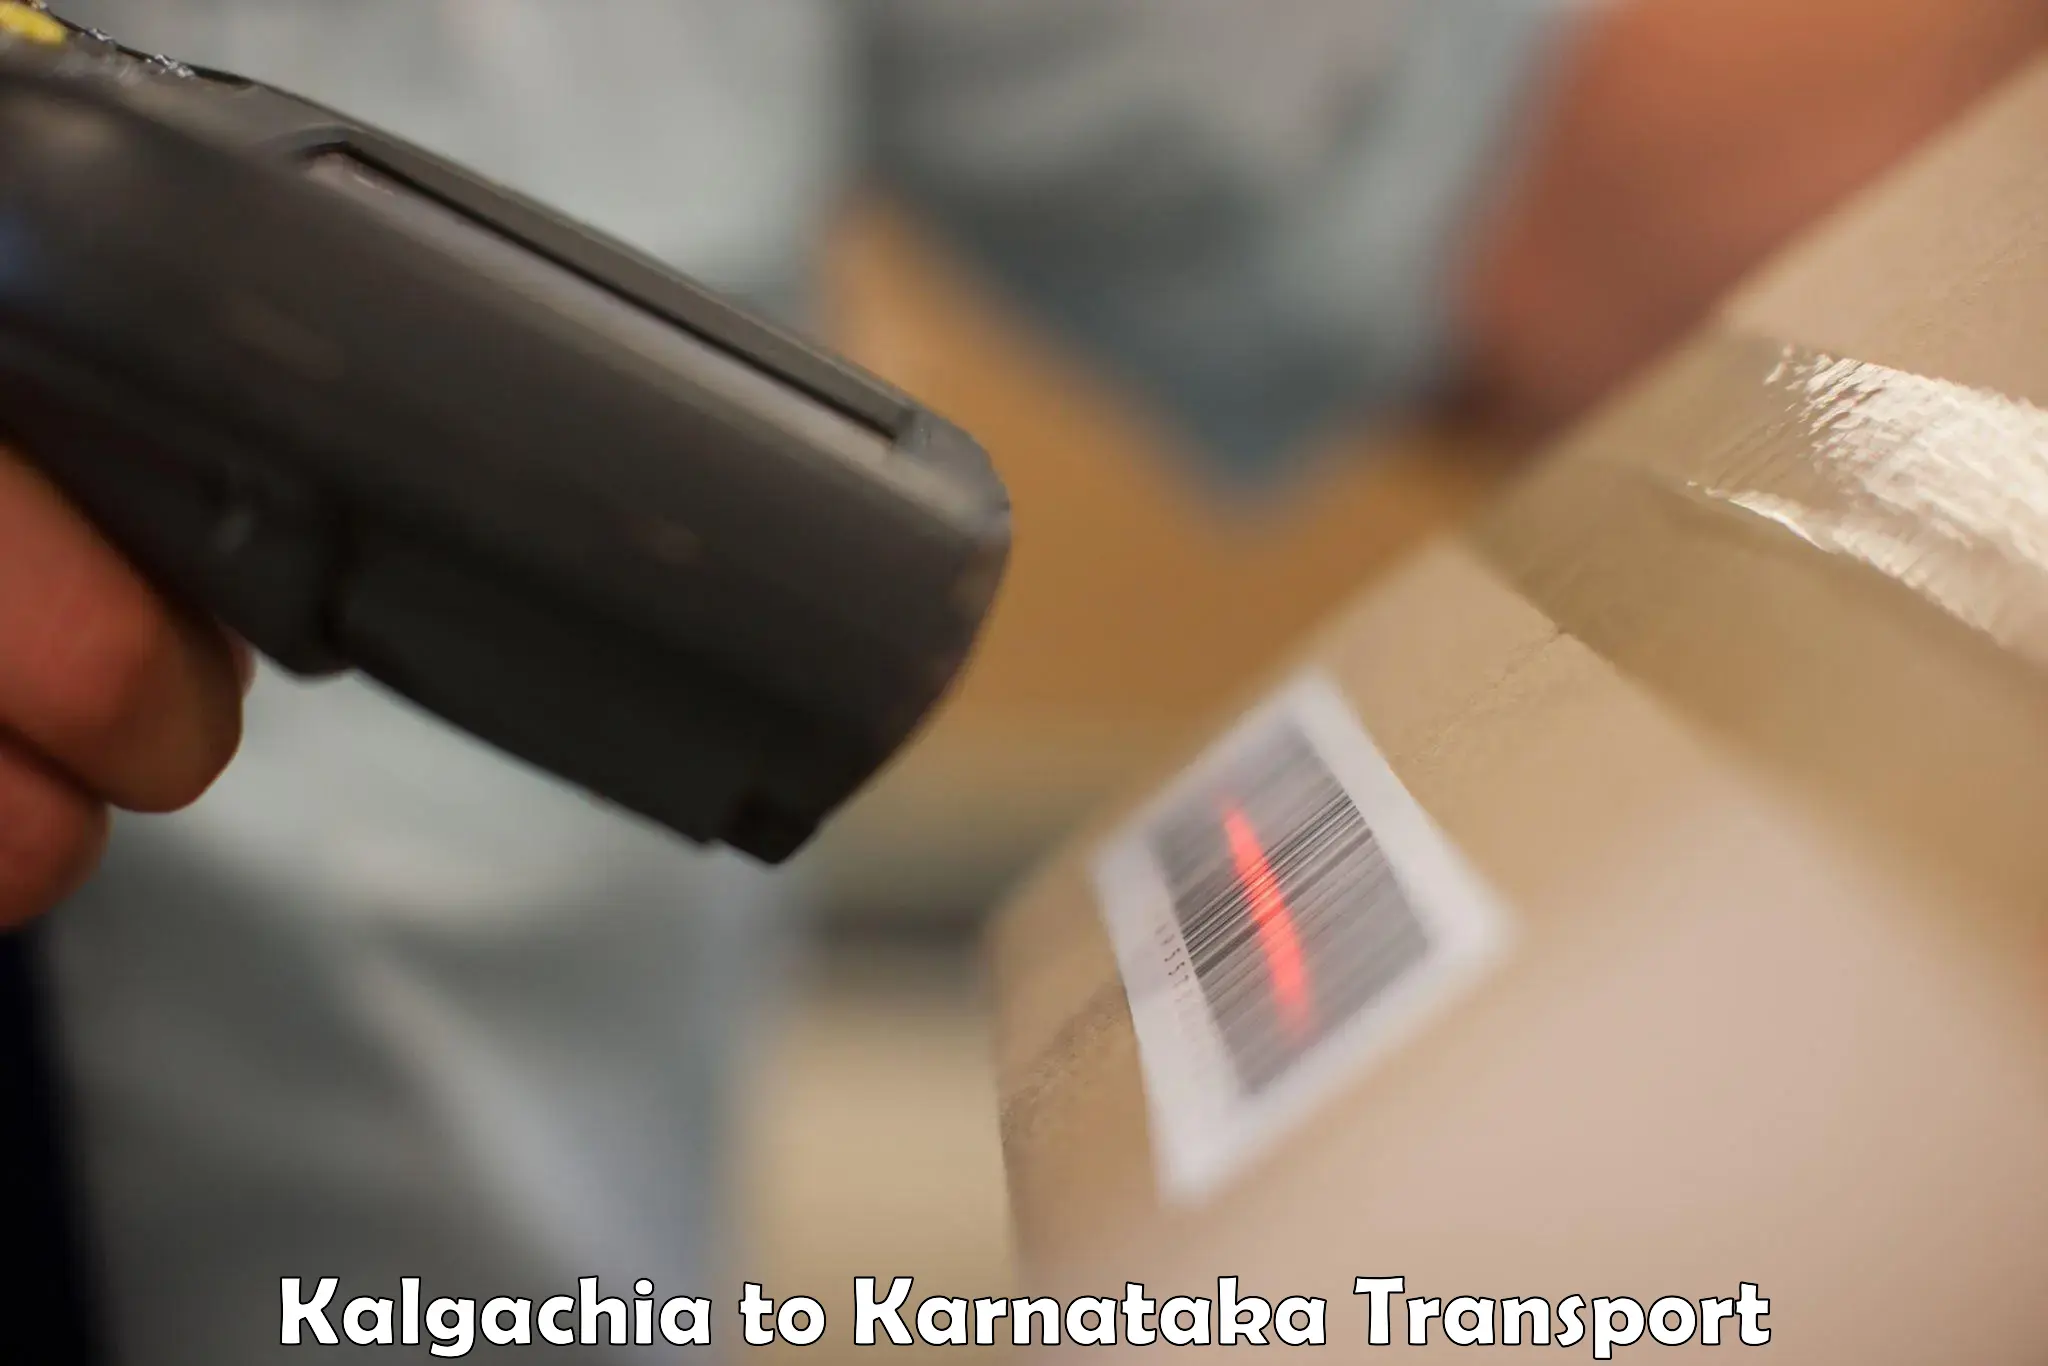 Delivery service Kalgachia to Karnataka